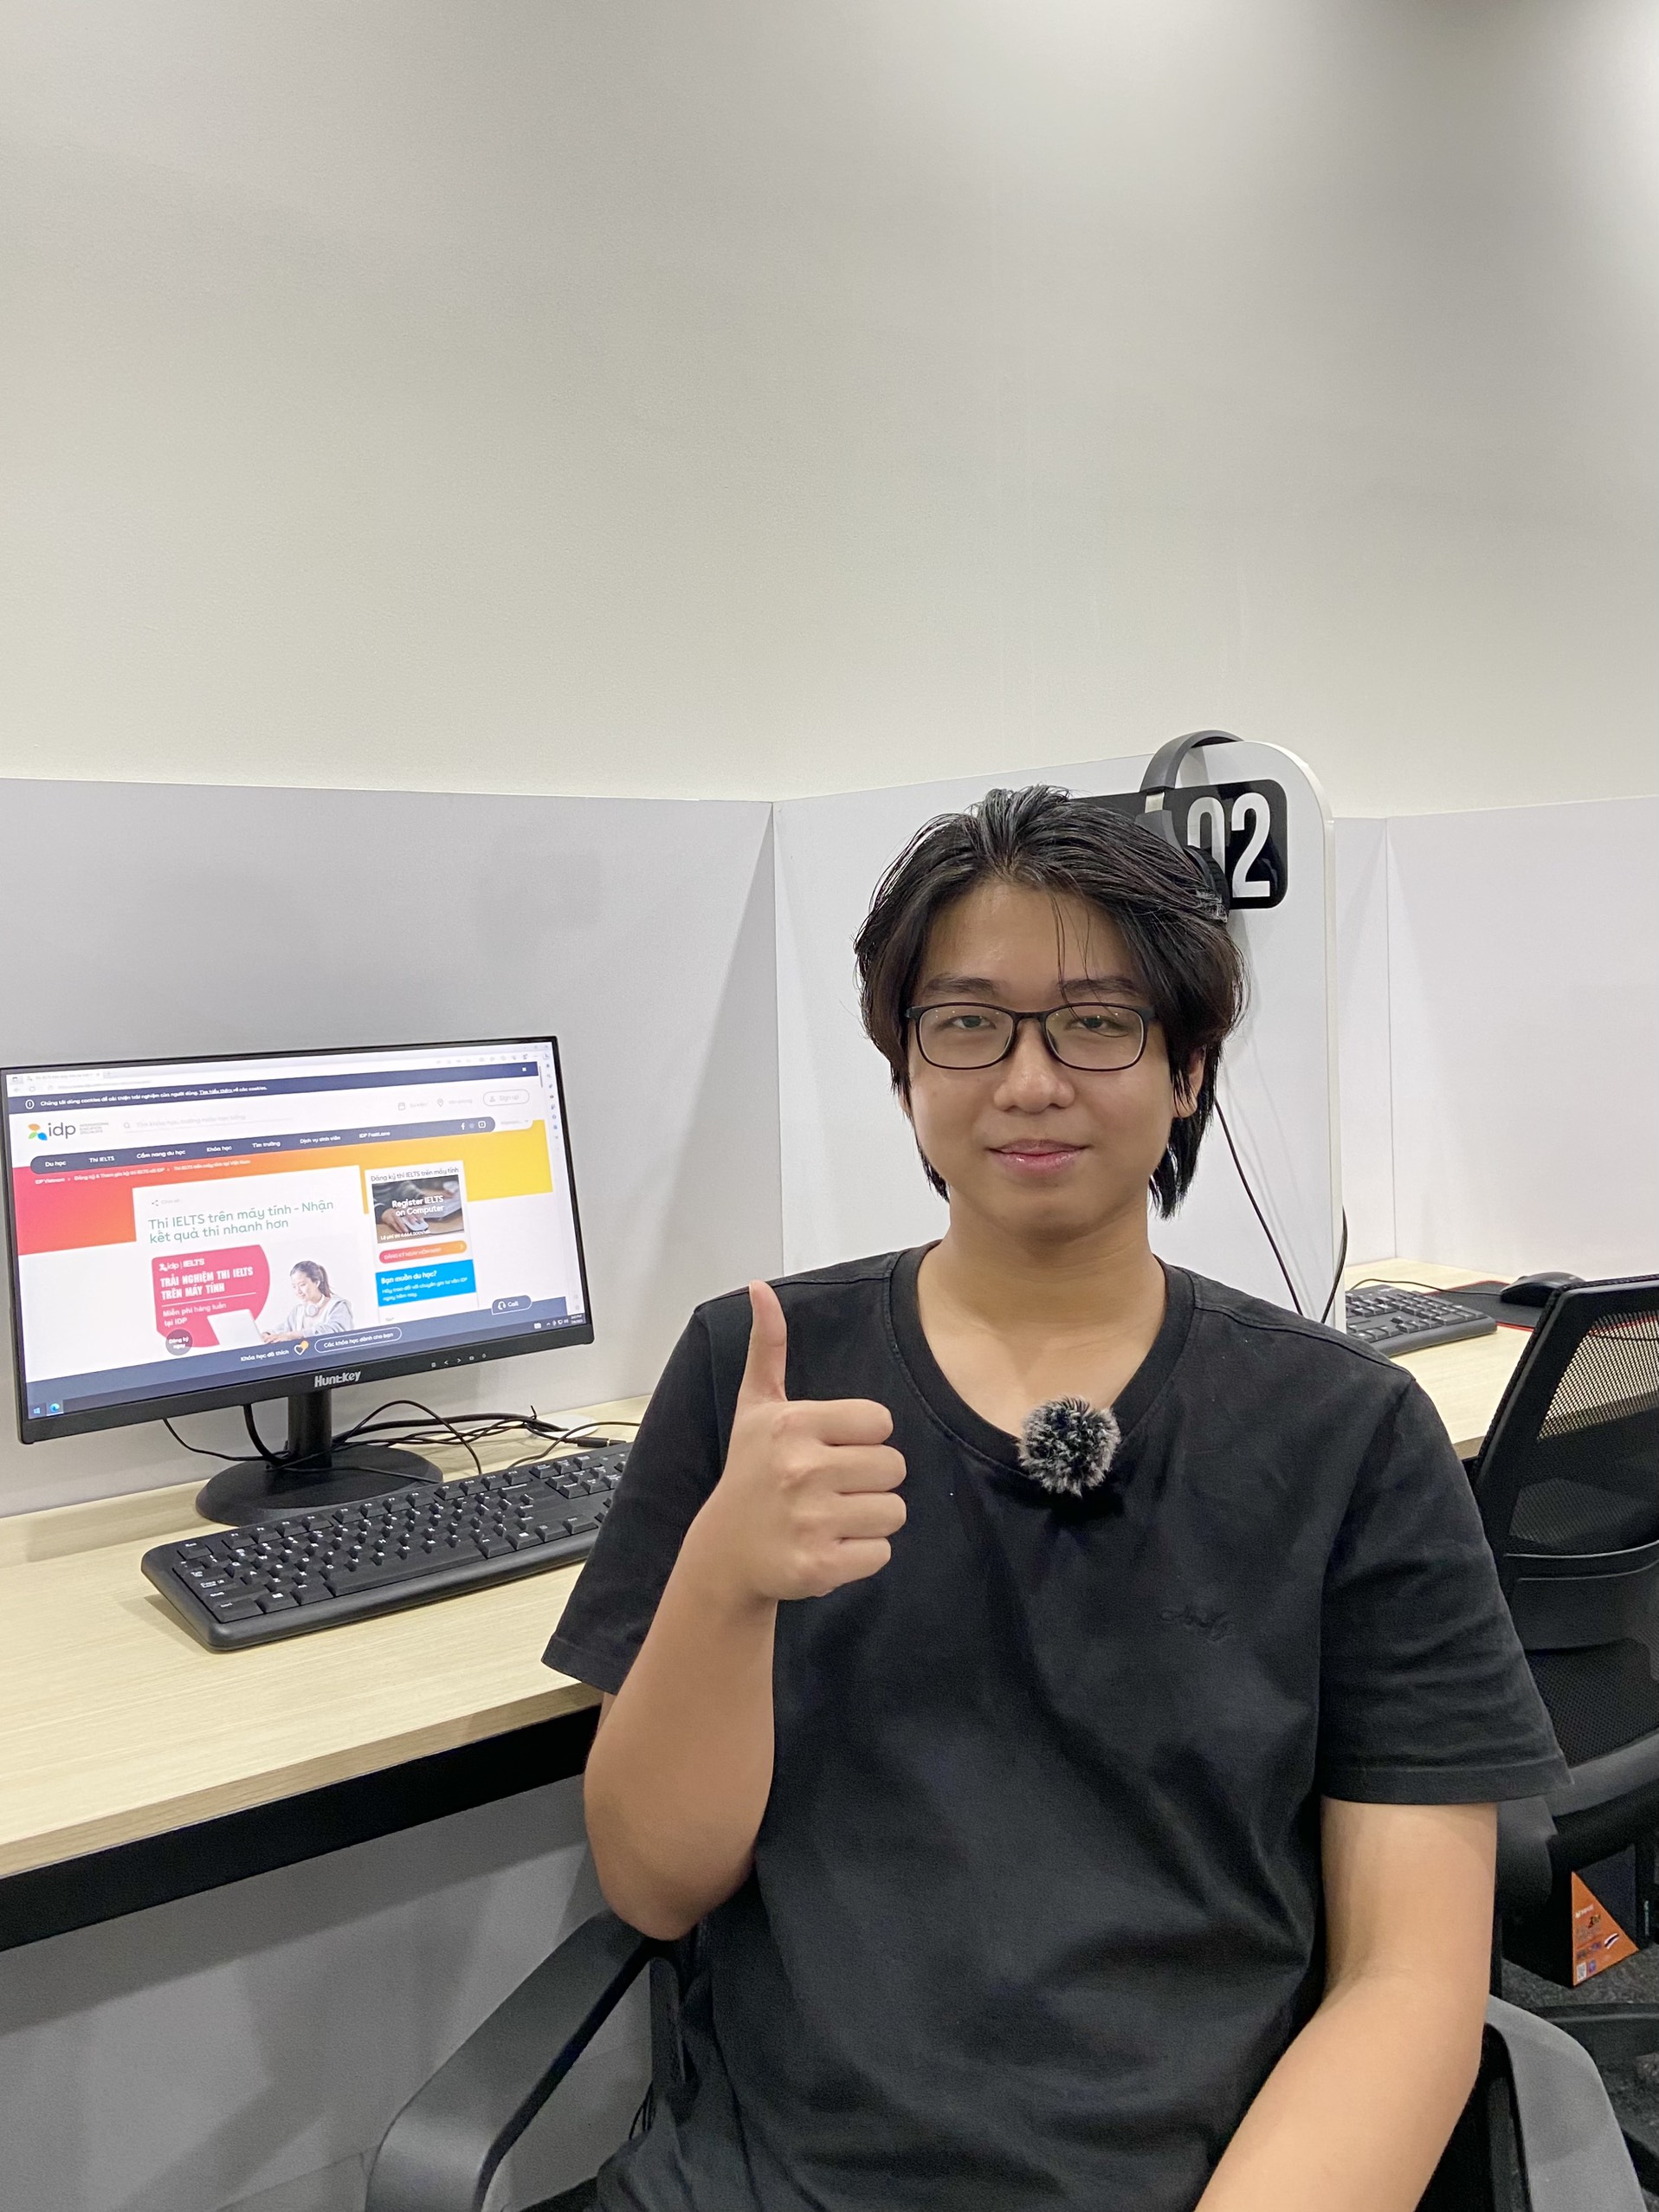 Minh Thuận chia sẻ, việc lựa chọn thi IELTS trên máy tính là một quyết định đúng đắn, giúp quá trình thi của em trở nên dễ dàng hơn.